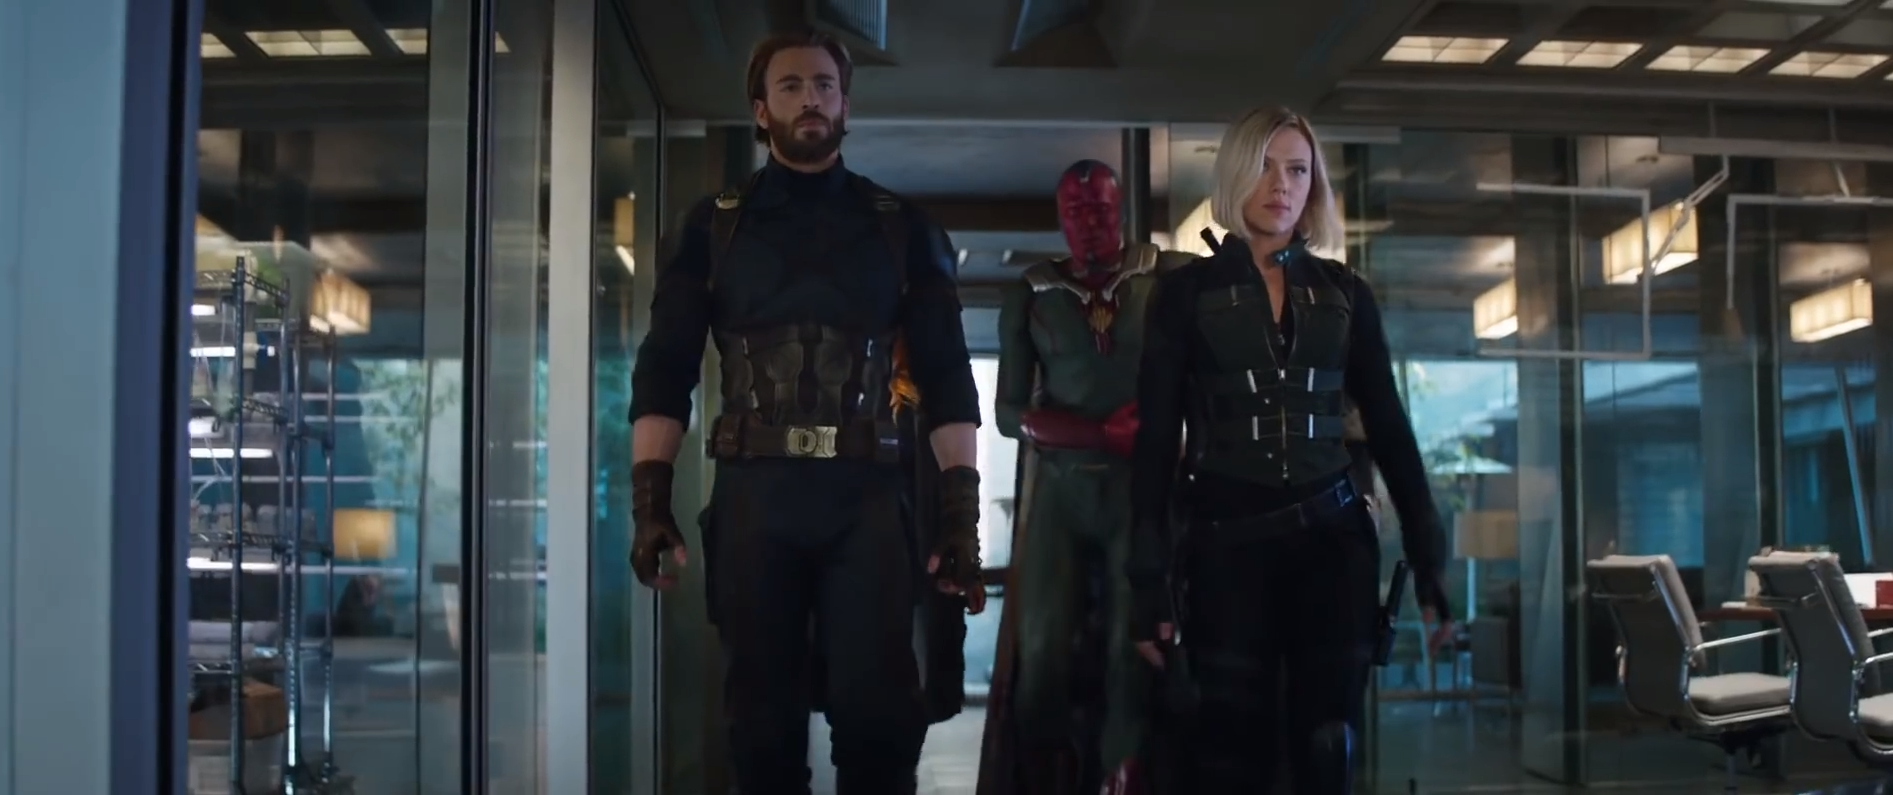 Teaser mới của Avengers: Infinity War hé lộ cảnh Spider-Man chiến đấu trên vũ trụ - Ảnh 3.